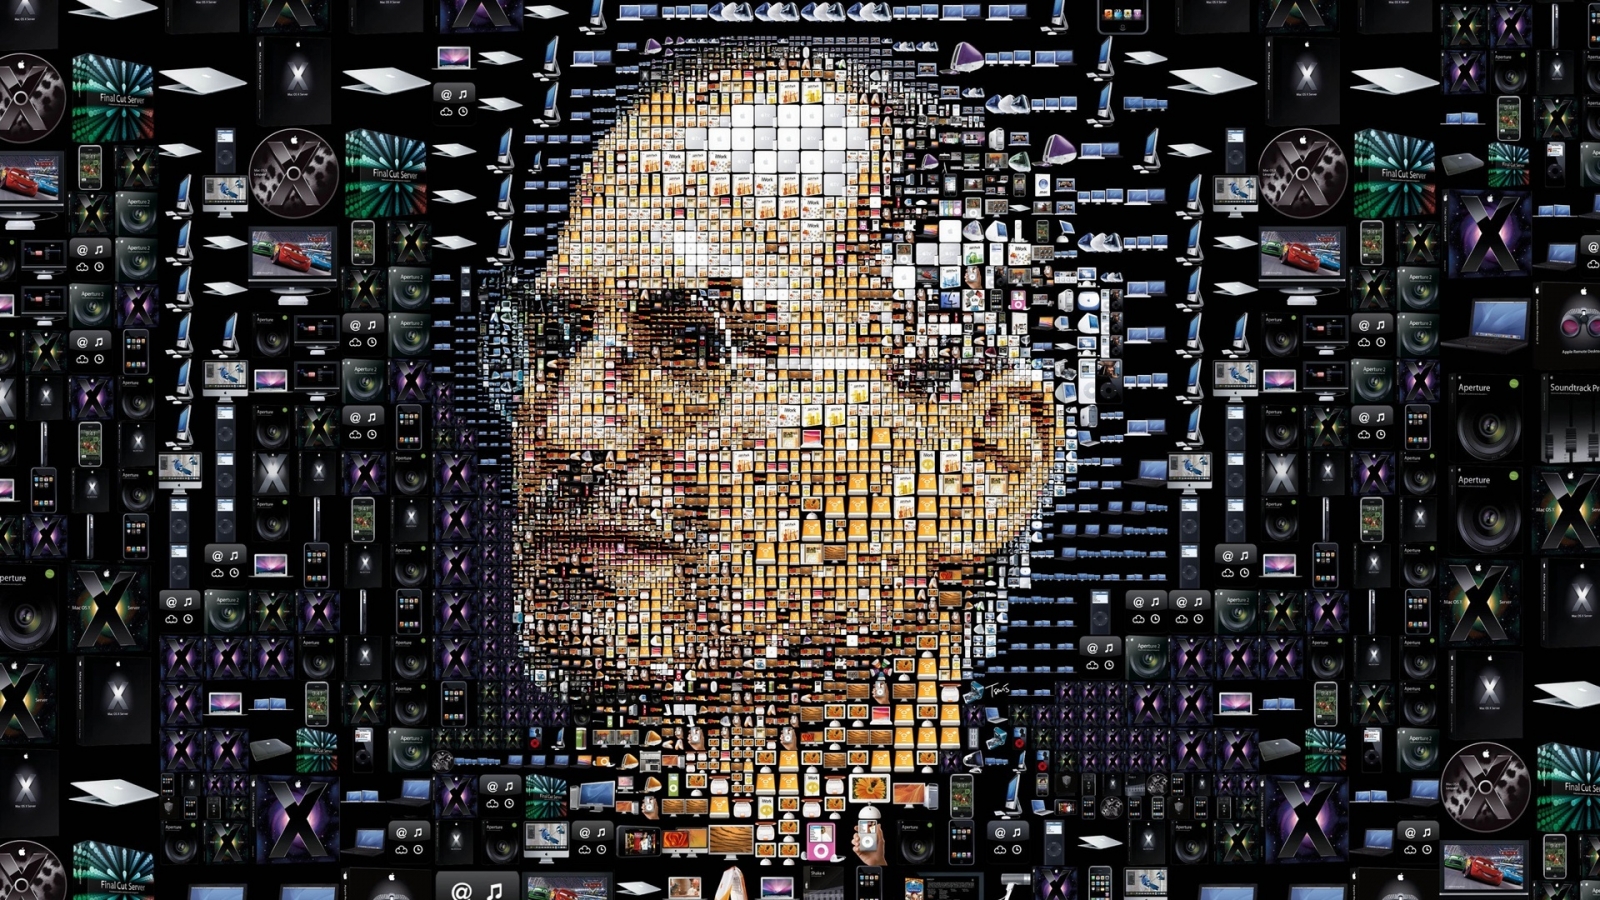 Steve Jobs for 1600 x 900 HDTV resolution